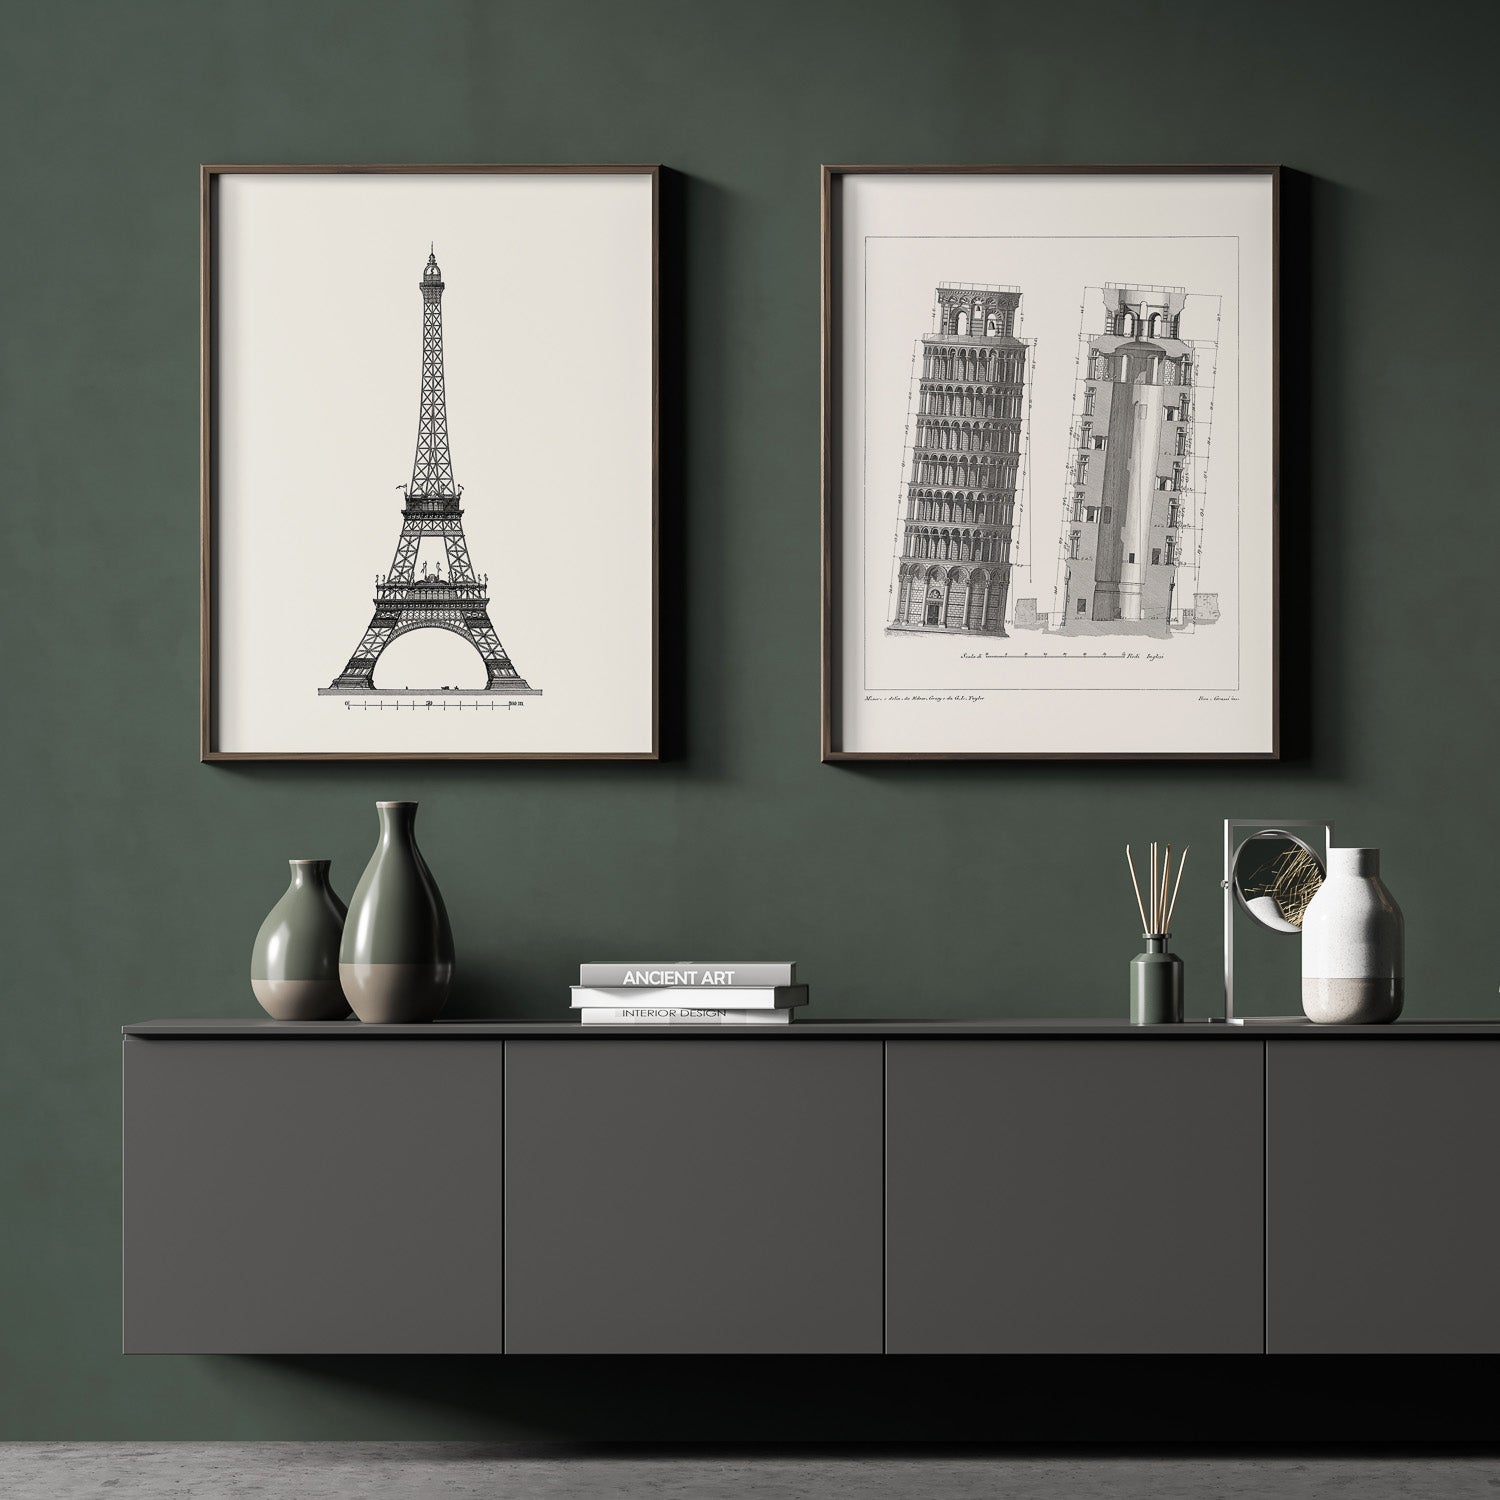 Arkitekturposter - Heminredning med eleganta byggnader och monument